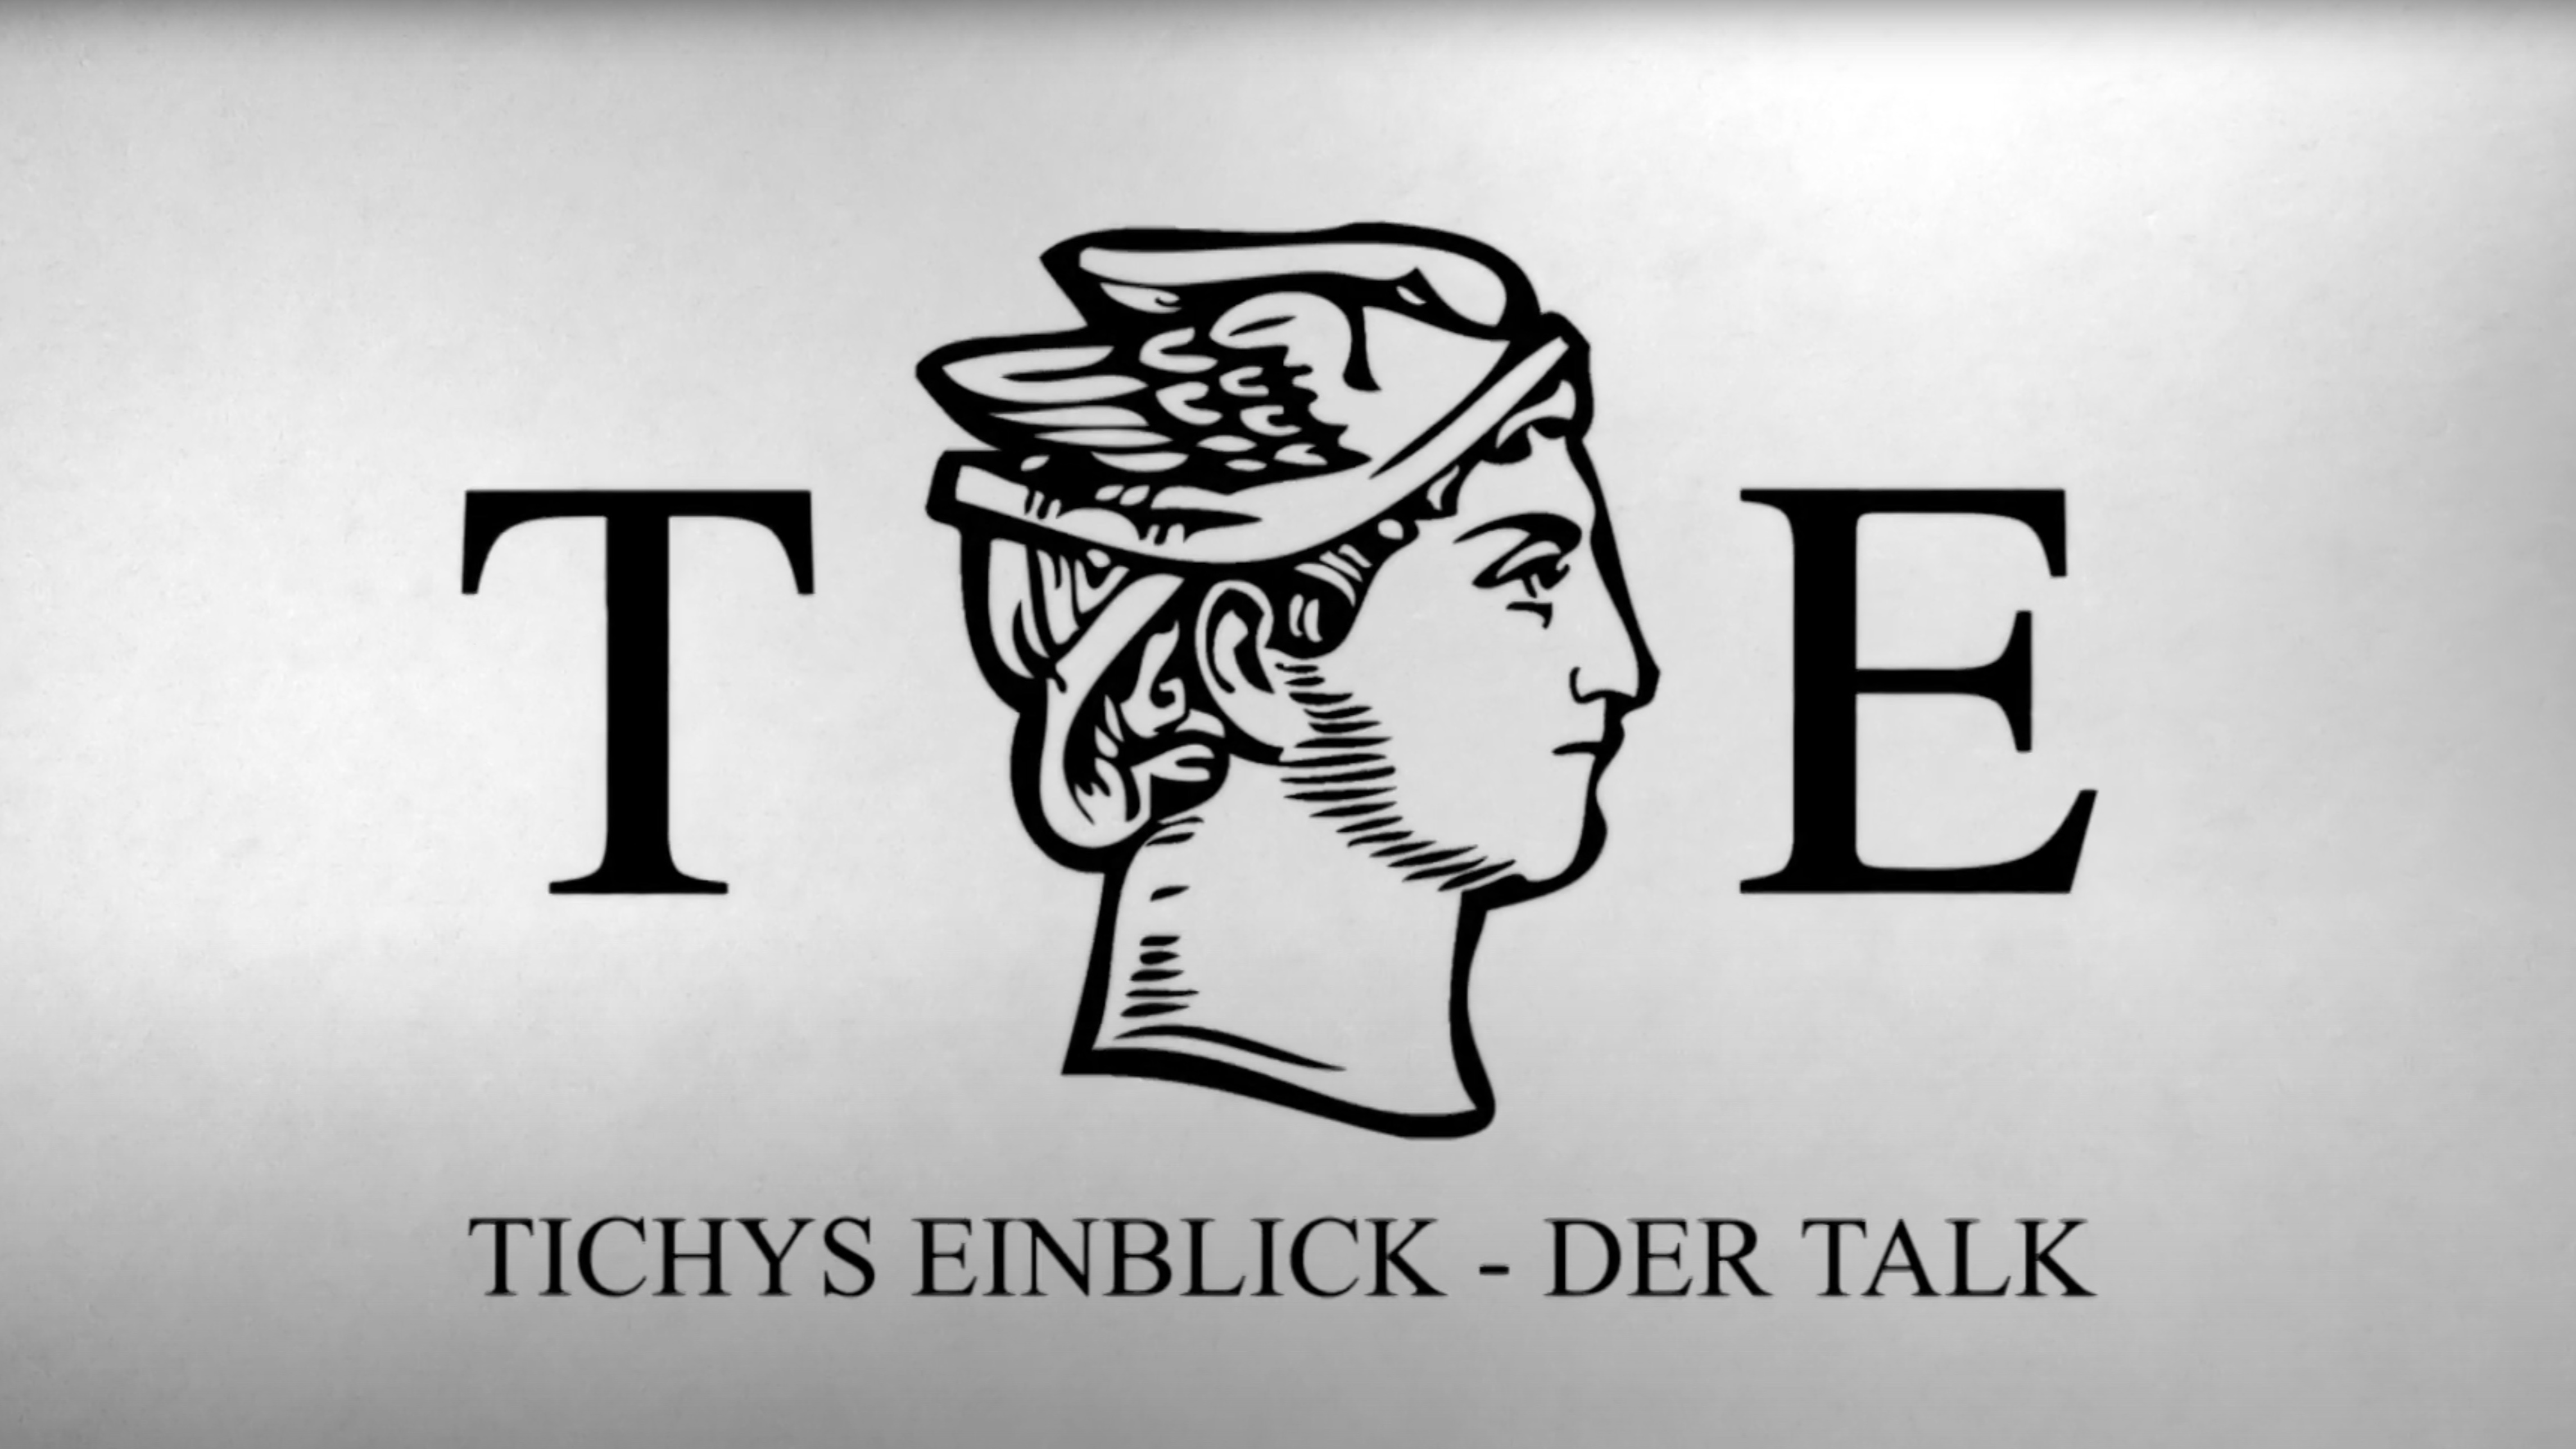 Tichys Einblick - Der Talk